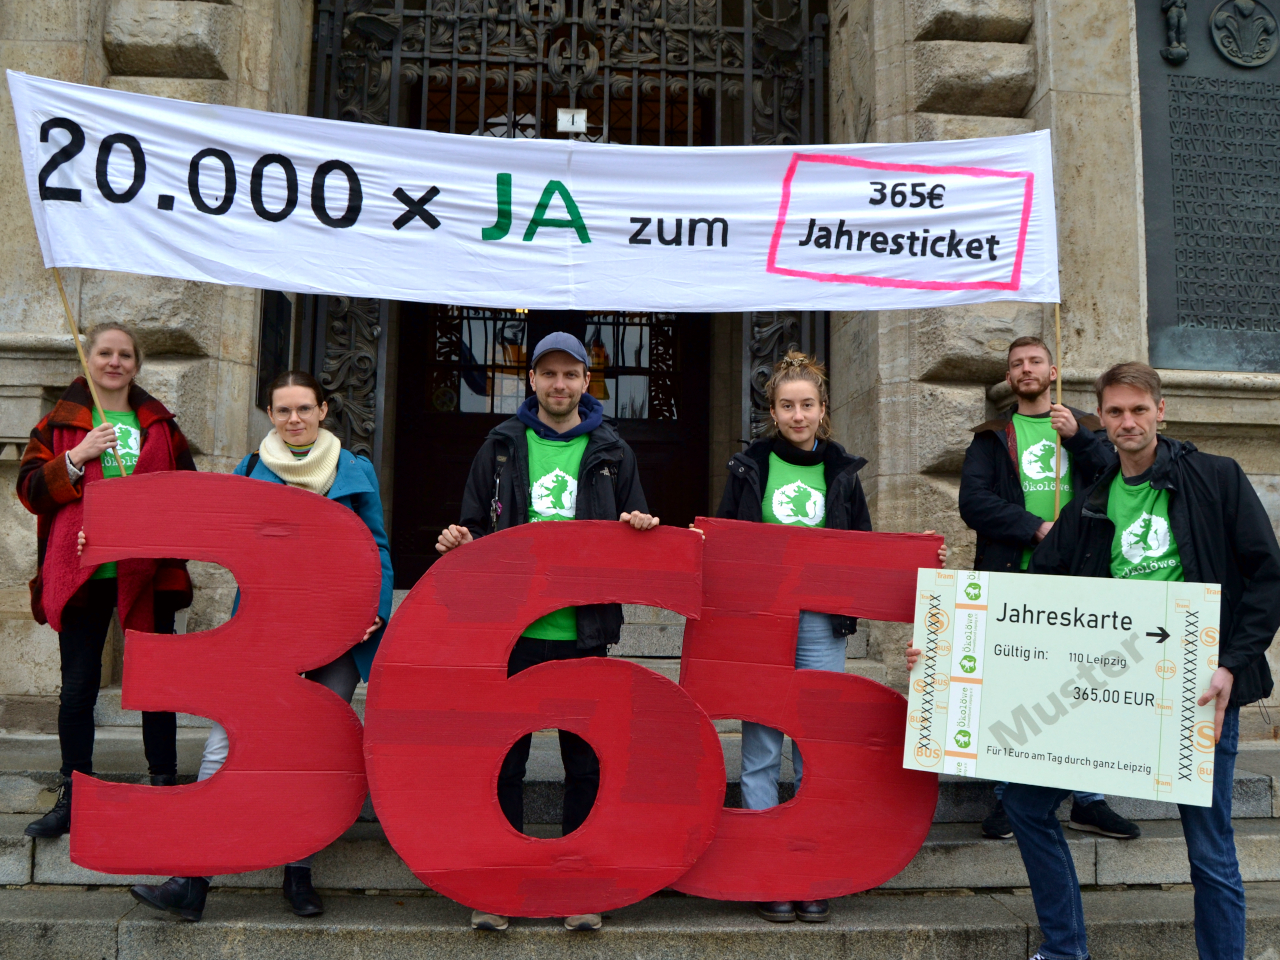 Bereits 20.000 LeipzigerInnen sagen 'JA' zum 365-Euro-Jahresticket